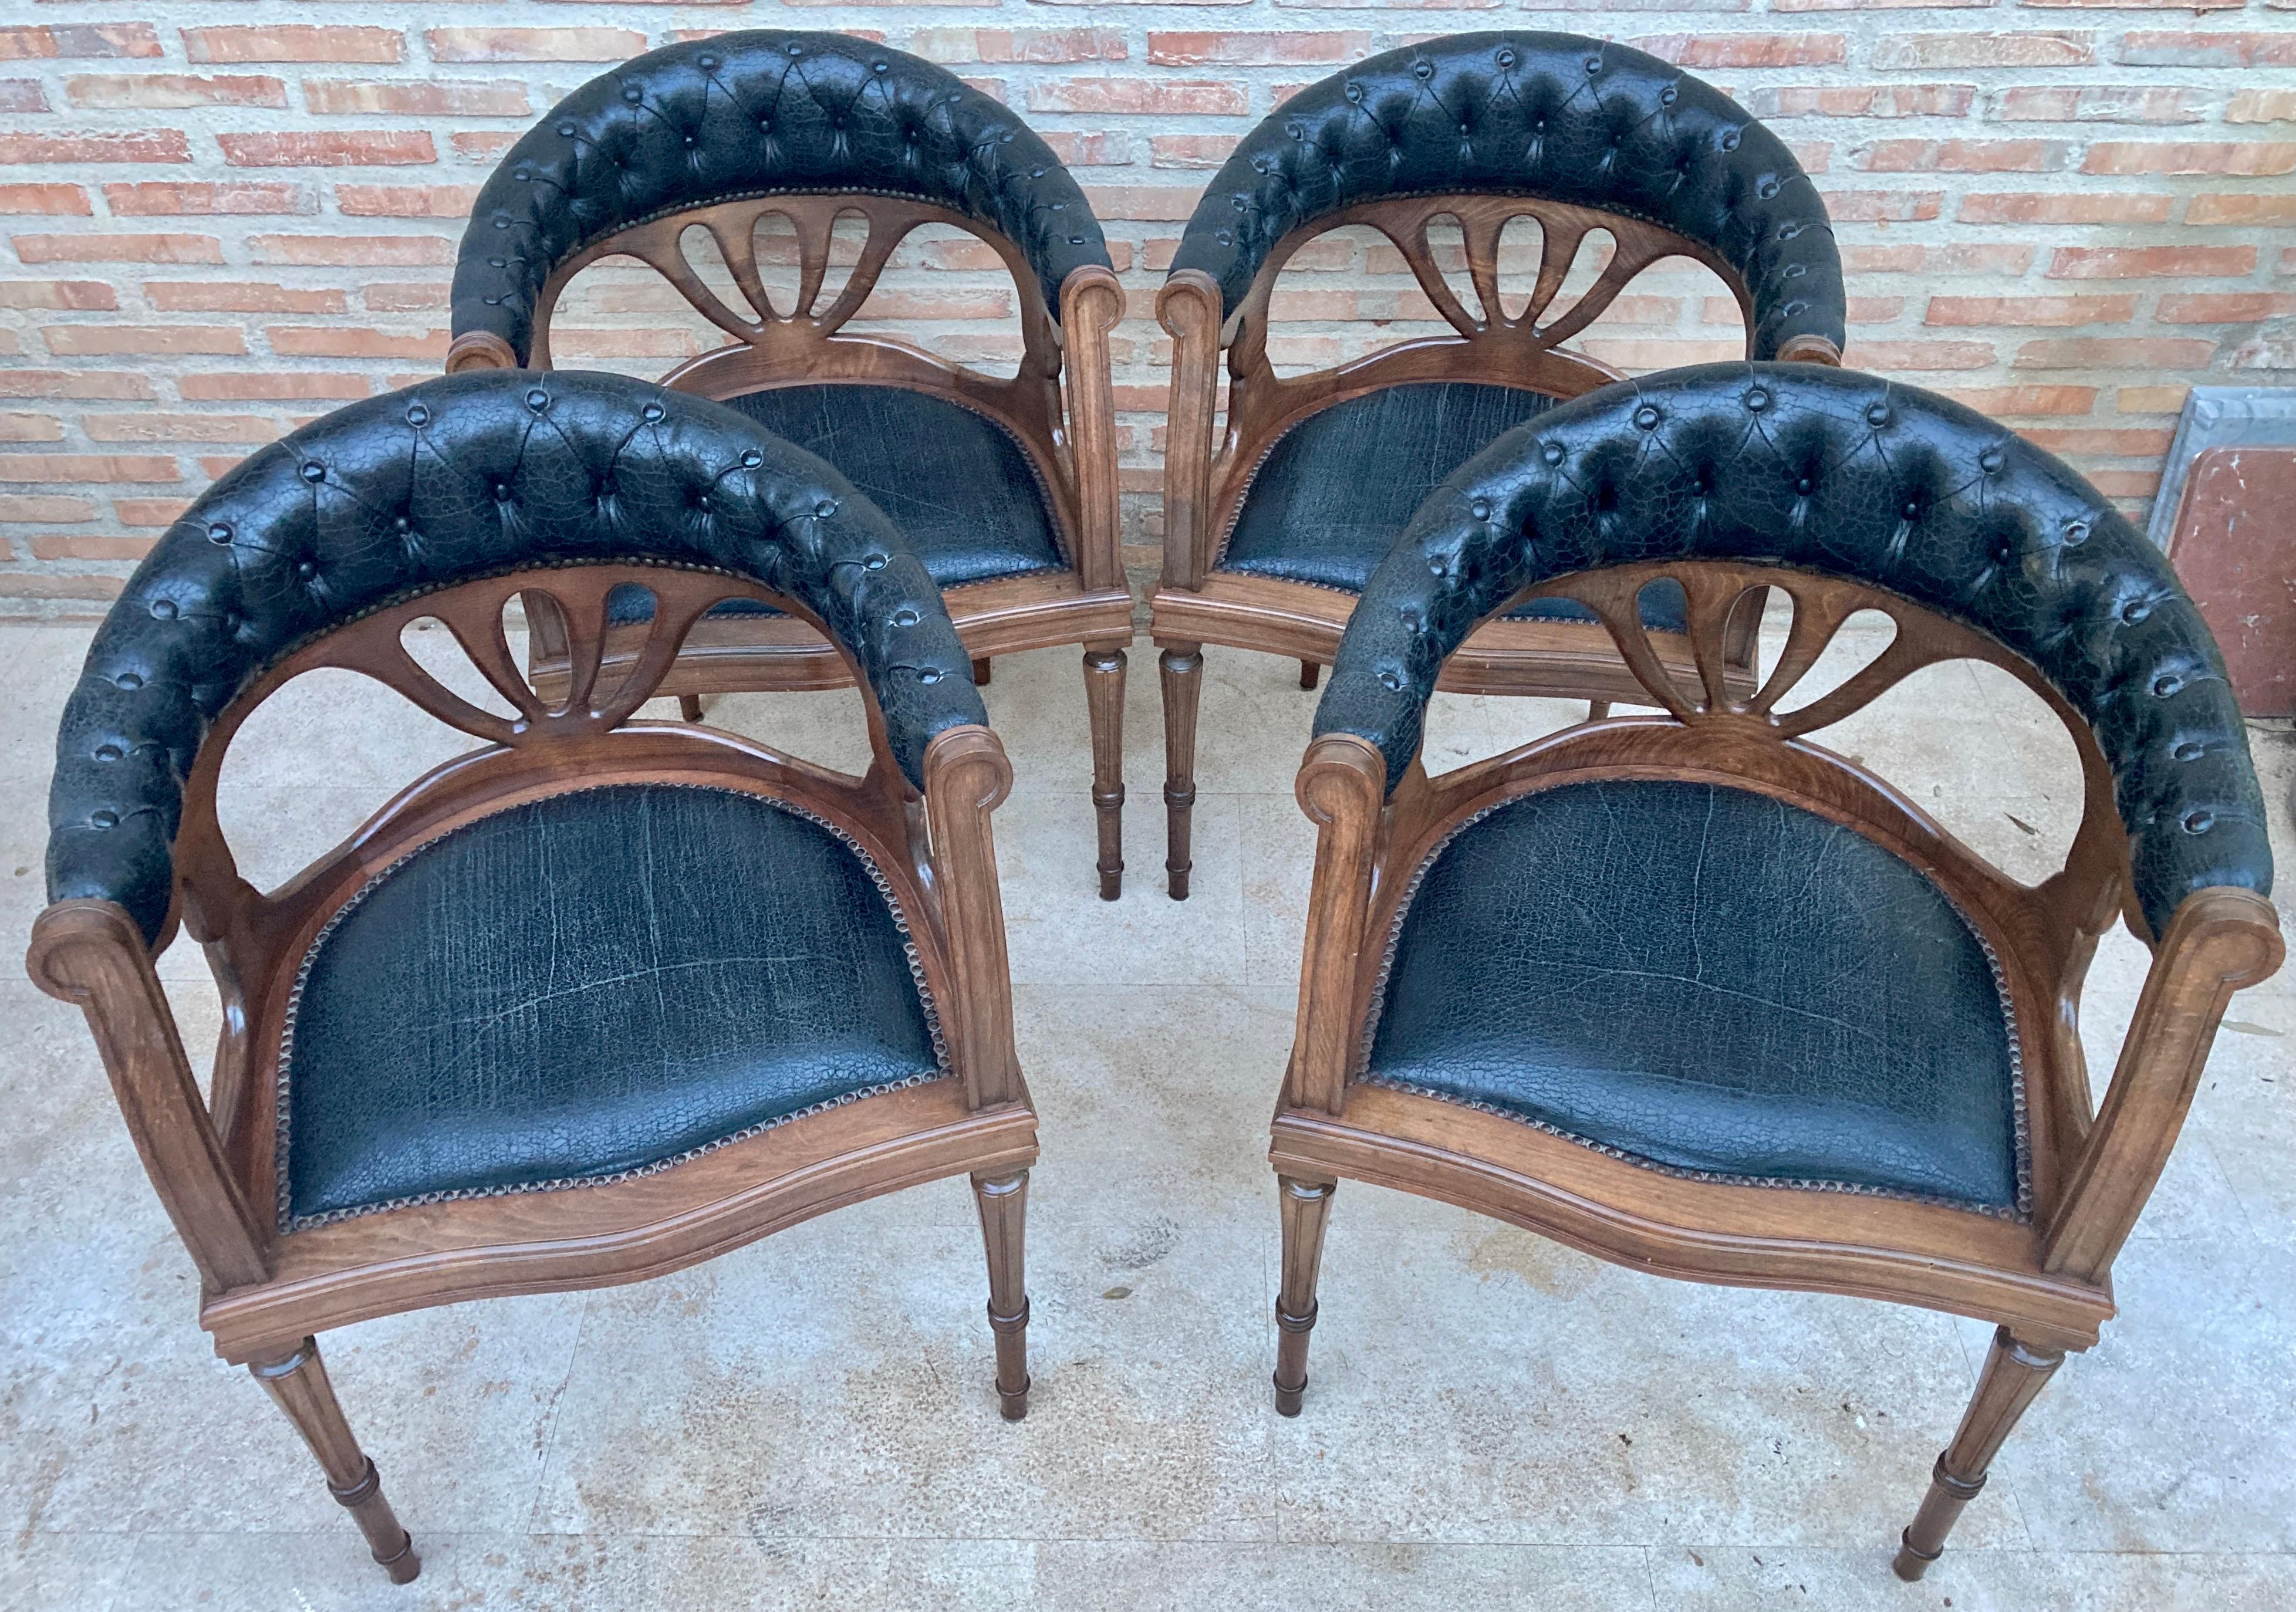 4er-Set Sessel aus Walnussholz und Vintage-Ledersitz. Etwa in den 1950er Jahren. 
Die Besonderheit der Stühle besteht darin, dass sie mit ihren originalen schwarzen Lederbezügen geliefert werden, die durch den Gebrauch leicht abgenutzt, aber gut